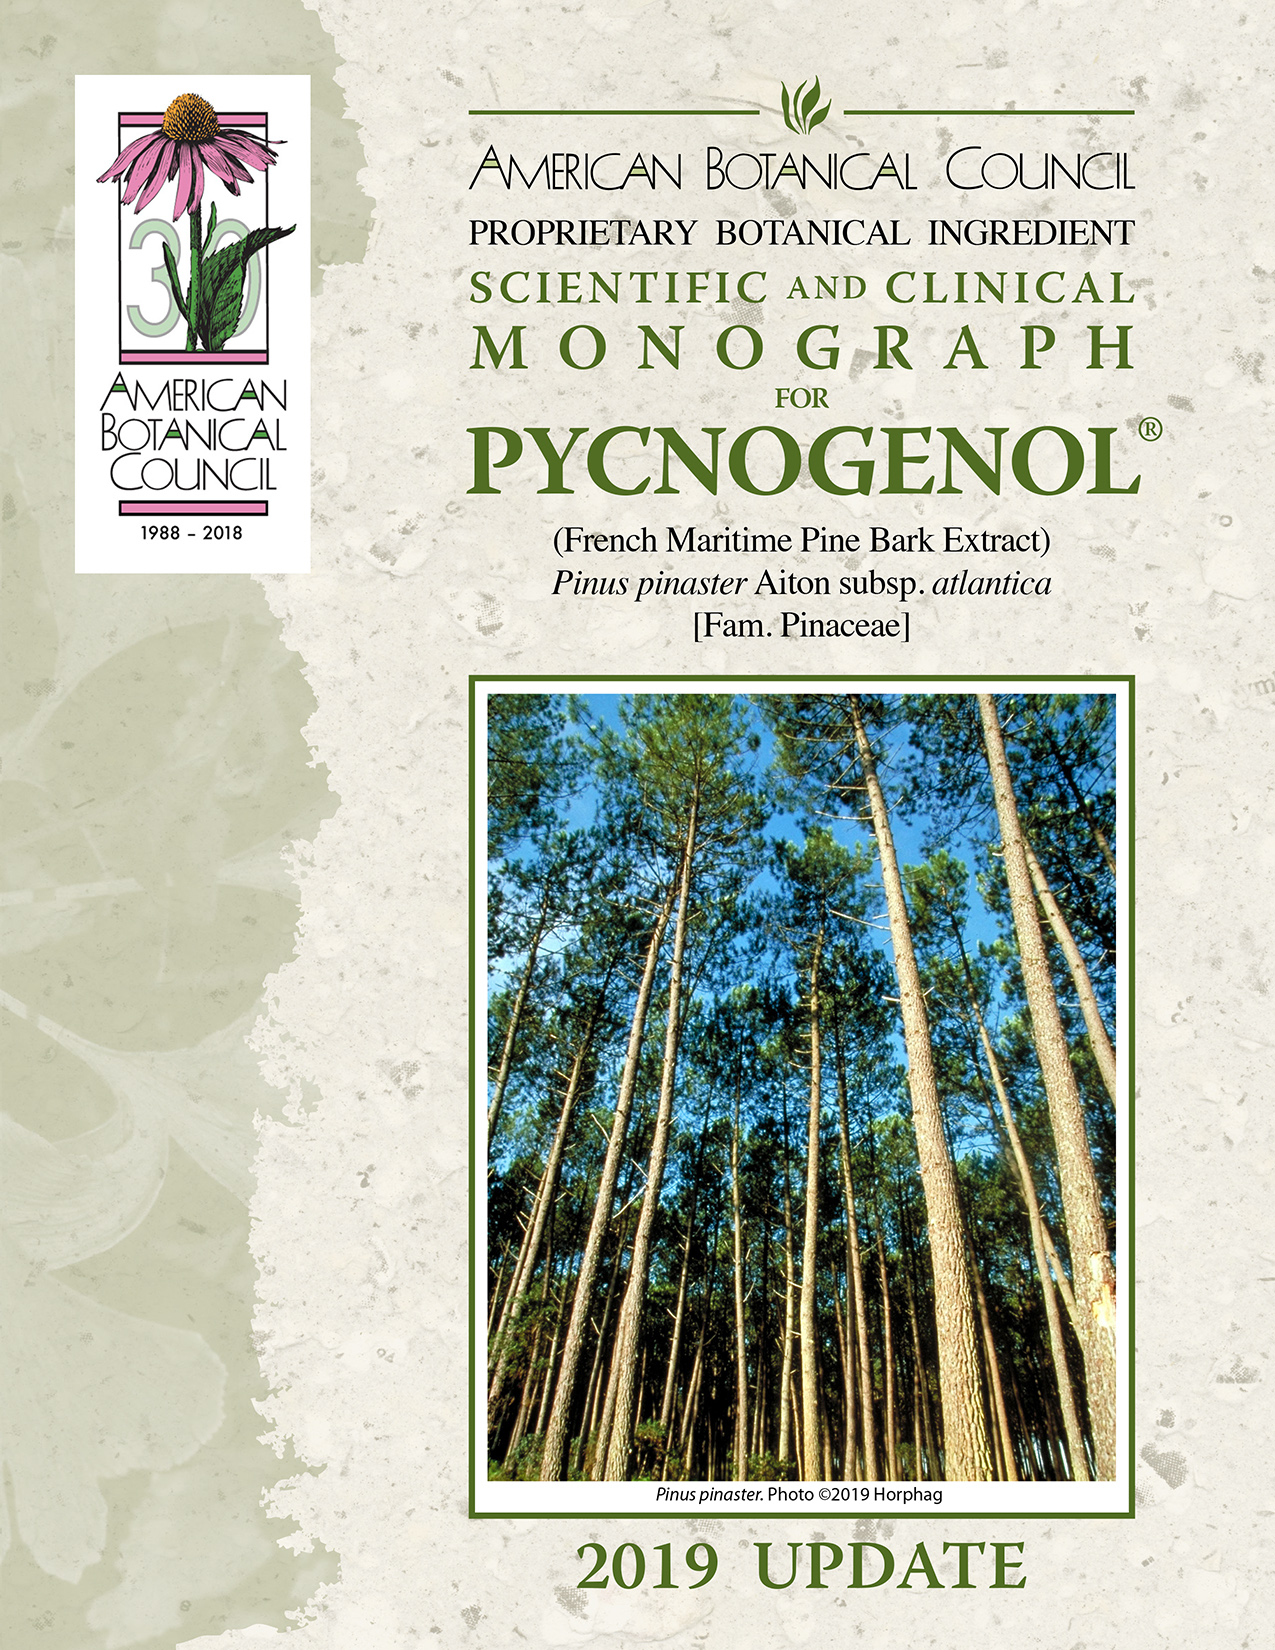 Pycnogenol Monograph cover 2019